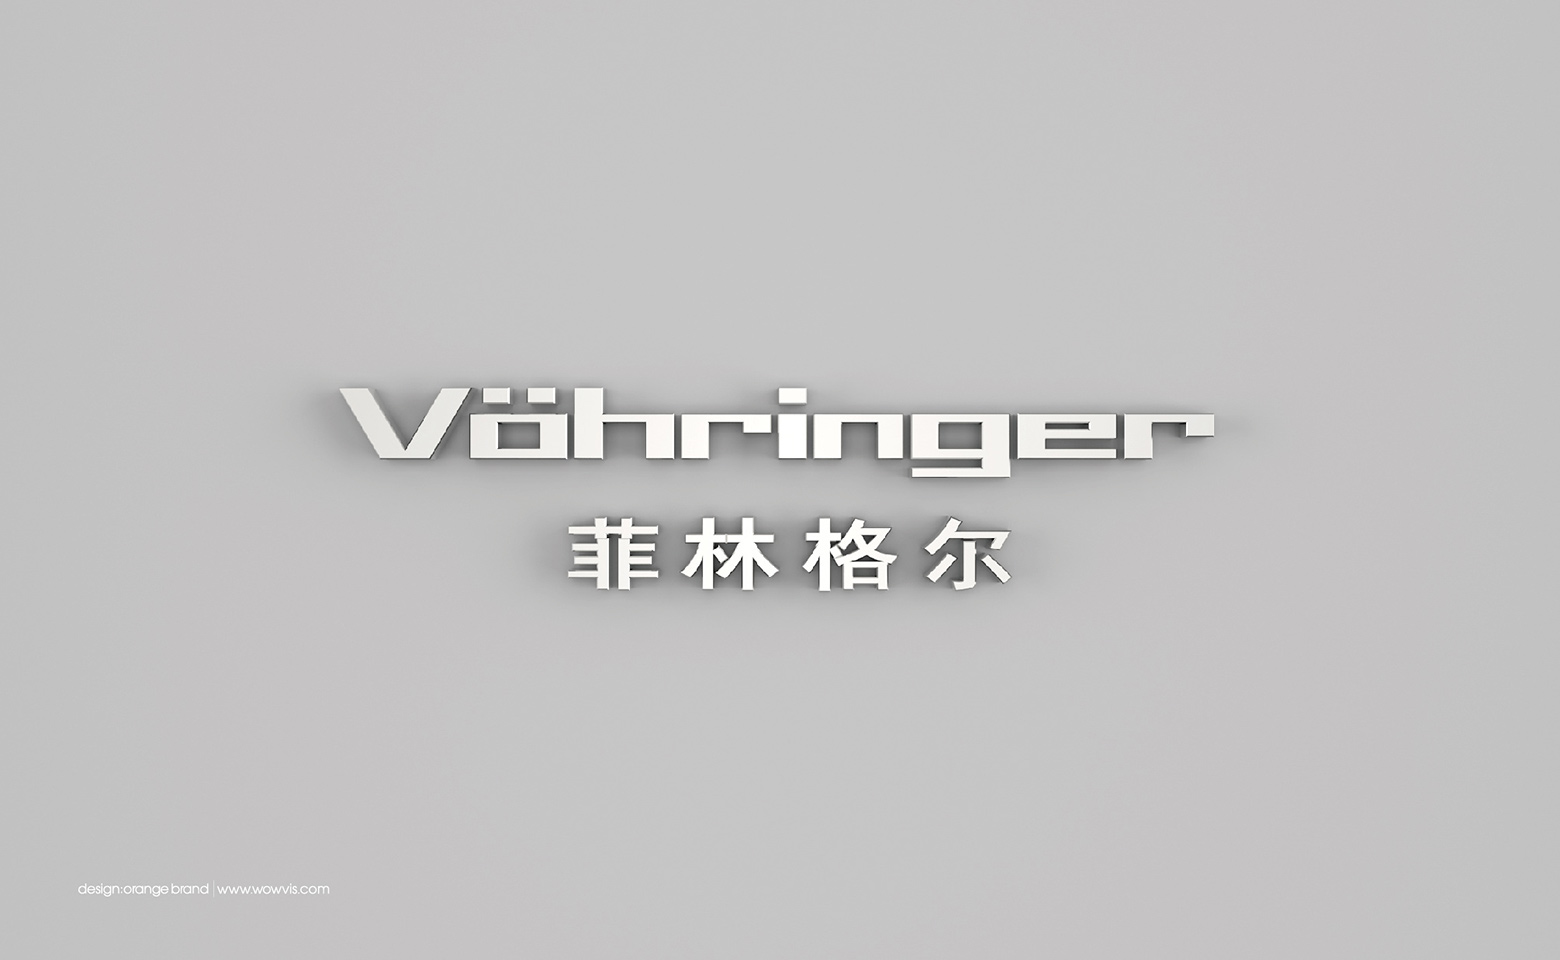 菲林格尔-品牌全案/vi设计/logo设计